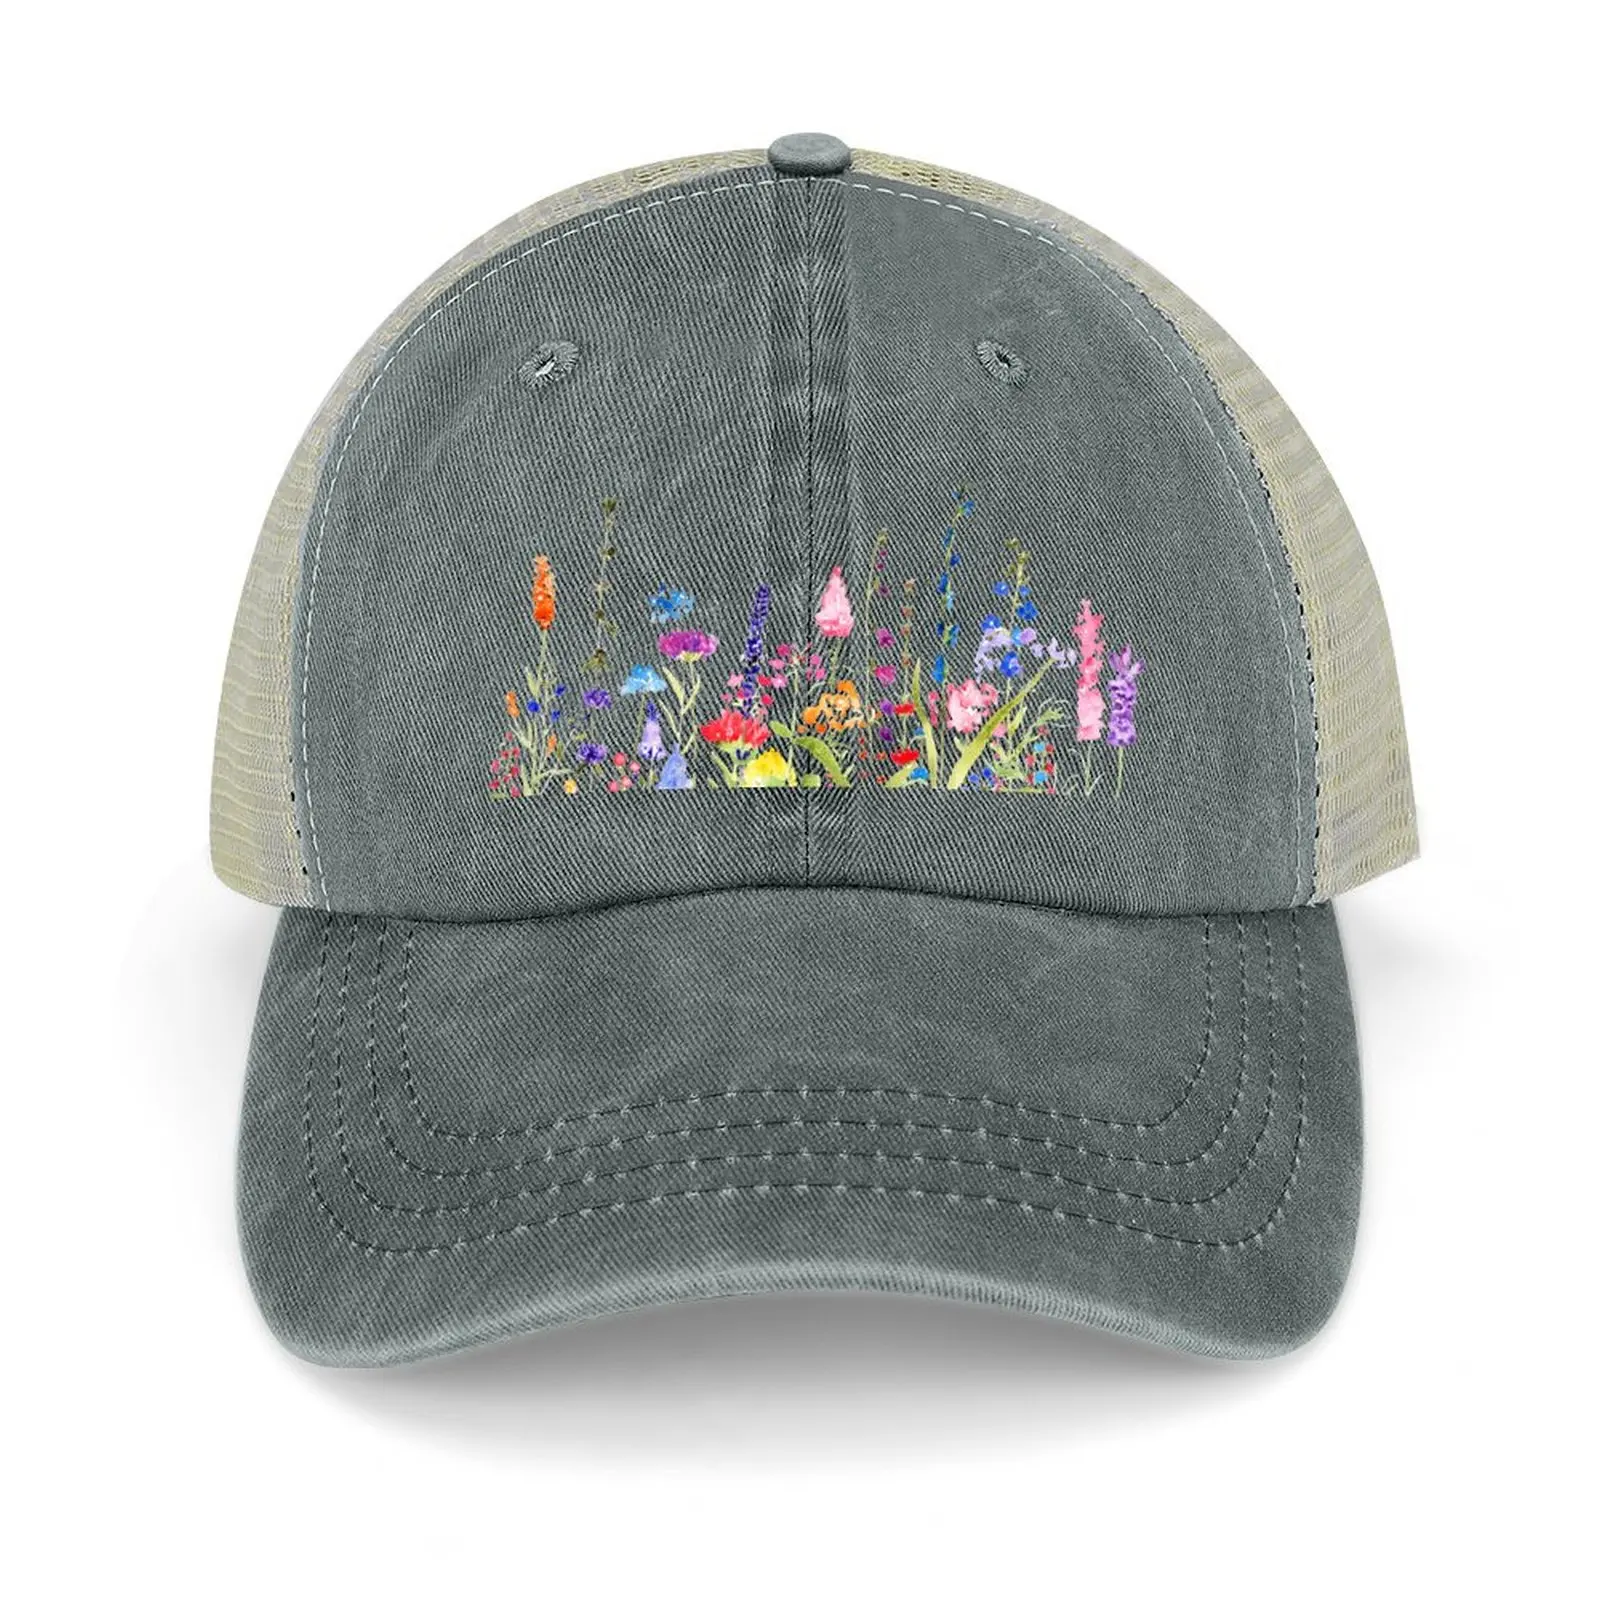 ковбойская шляпа с яркими полевыми цветами, роскошная шляпа, солнцезащитная шляпа, регби, новинка в элегантных женских шляпах, мужские